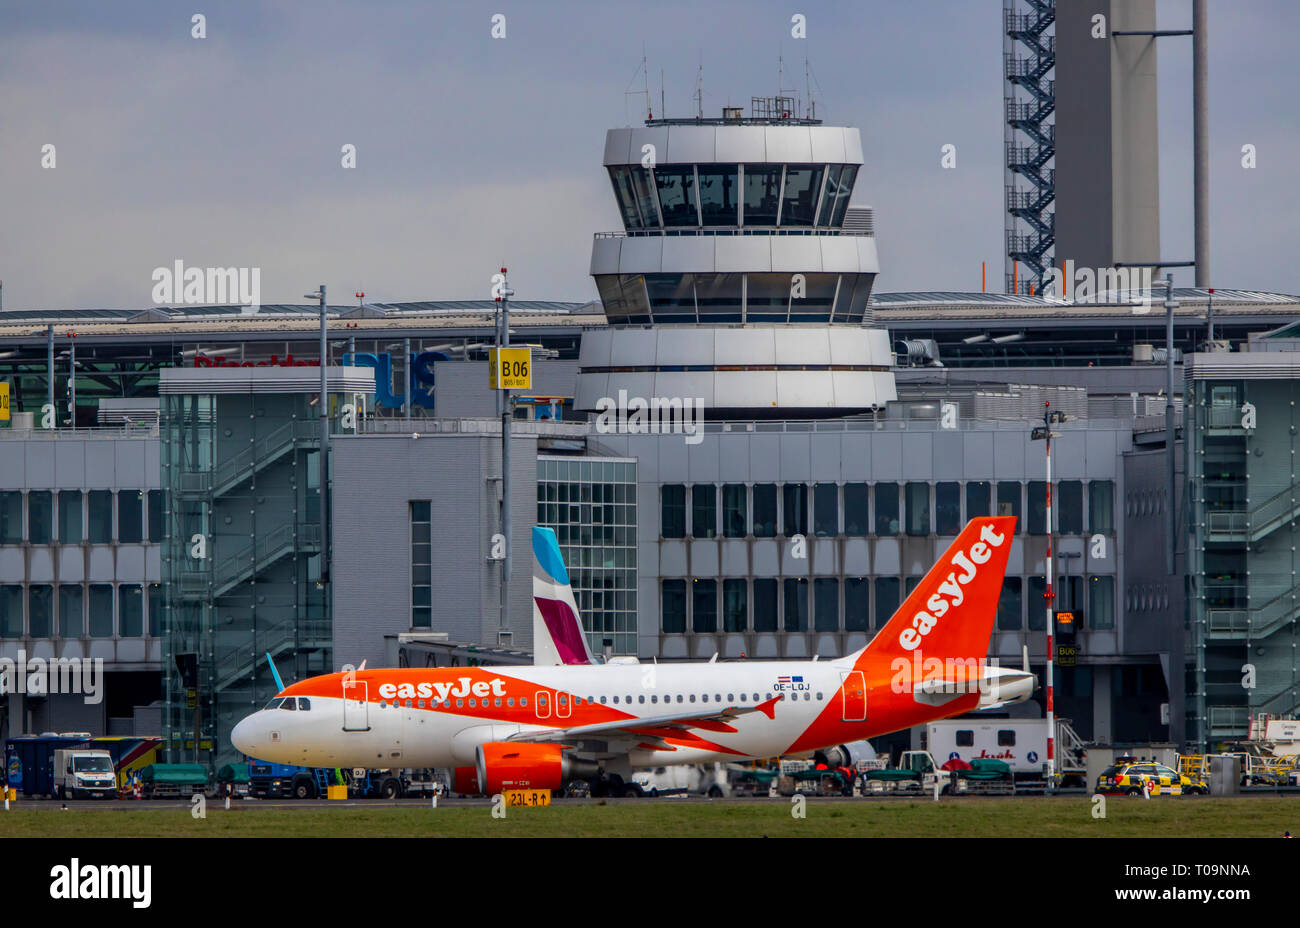 L'aeroporto internazionale di Düsseldorf, DUS, Eurowings, EasyJet, del controllo del traffico aereo Tower, Foto Stock